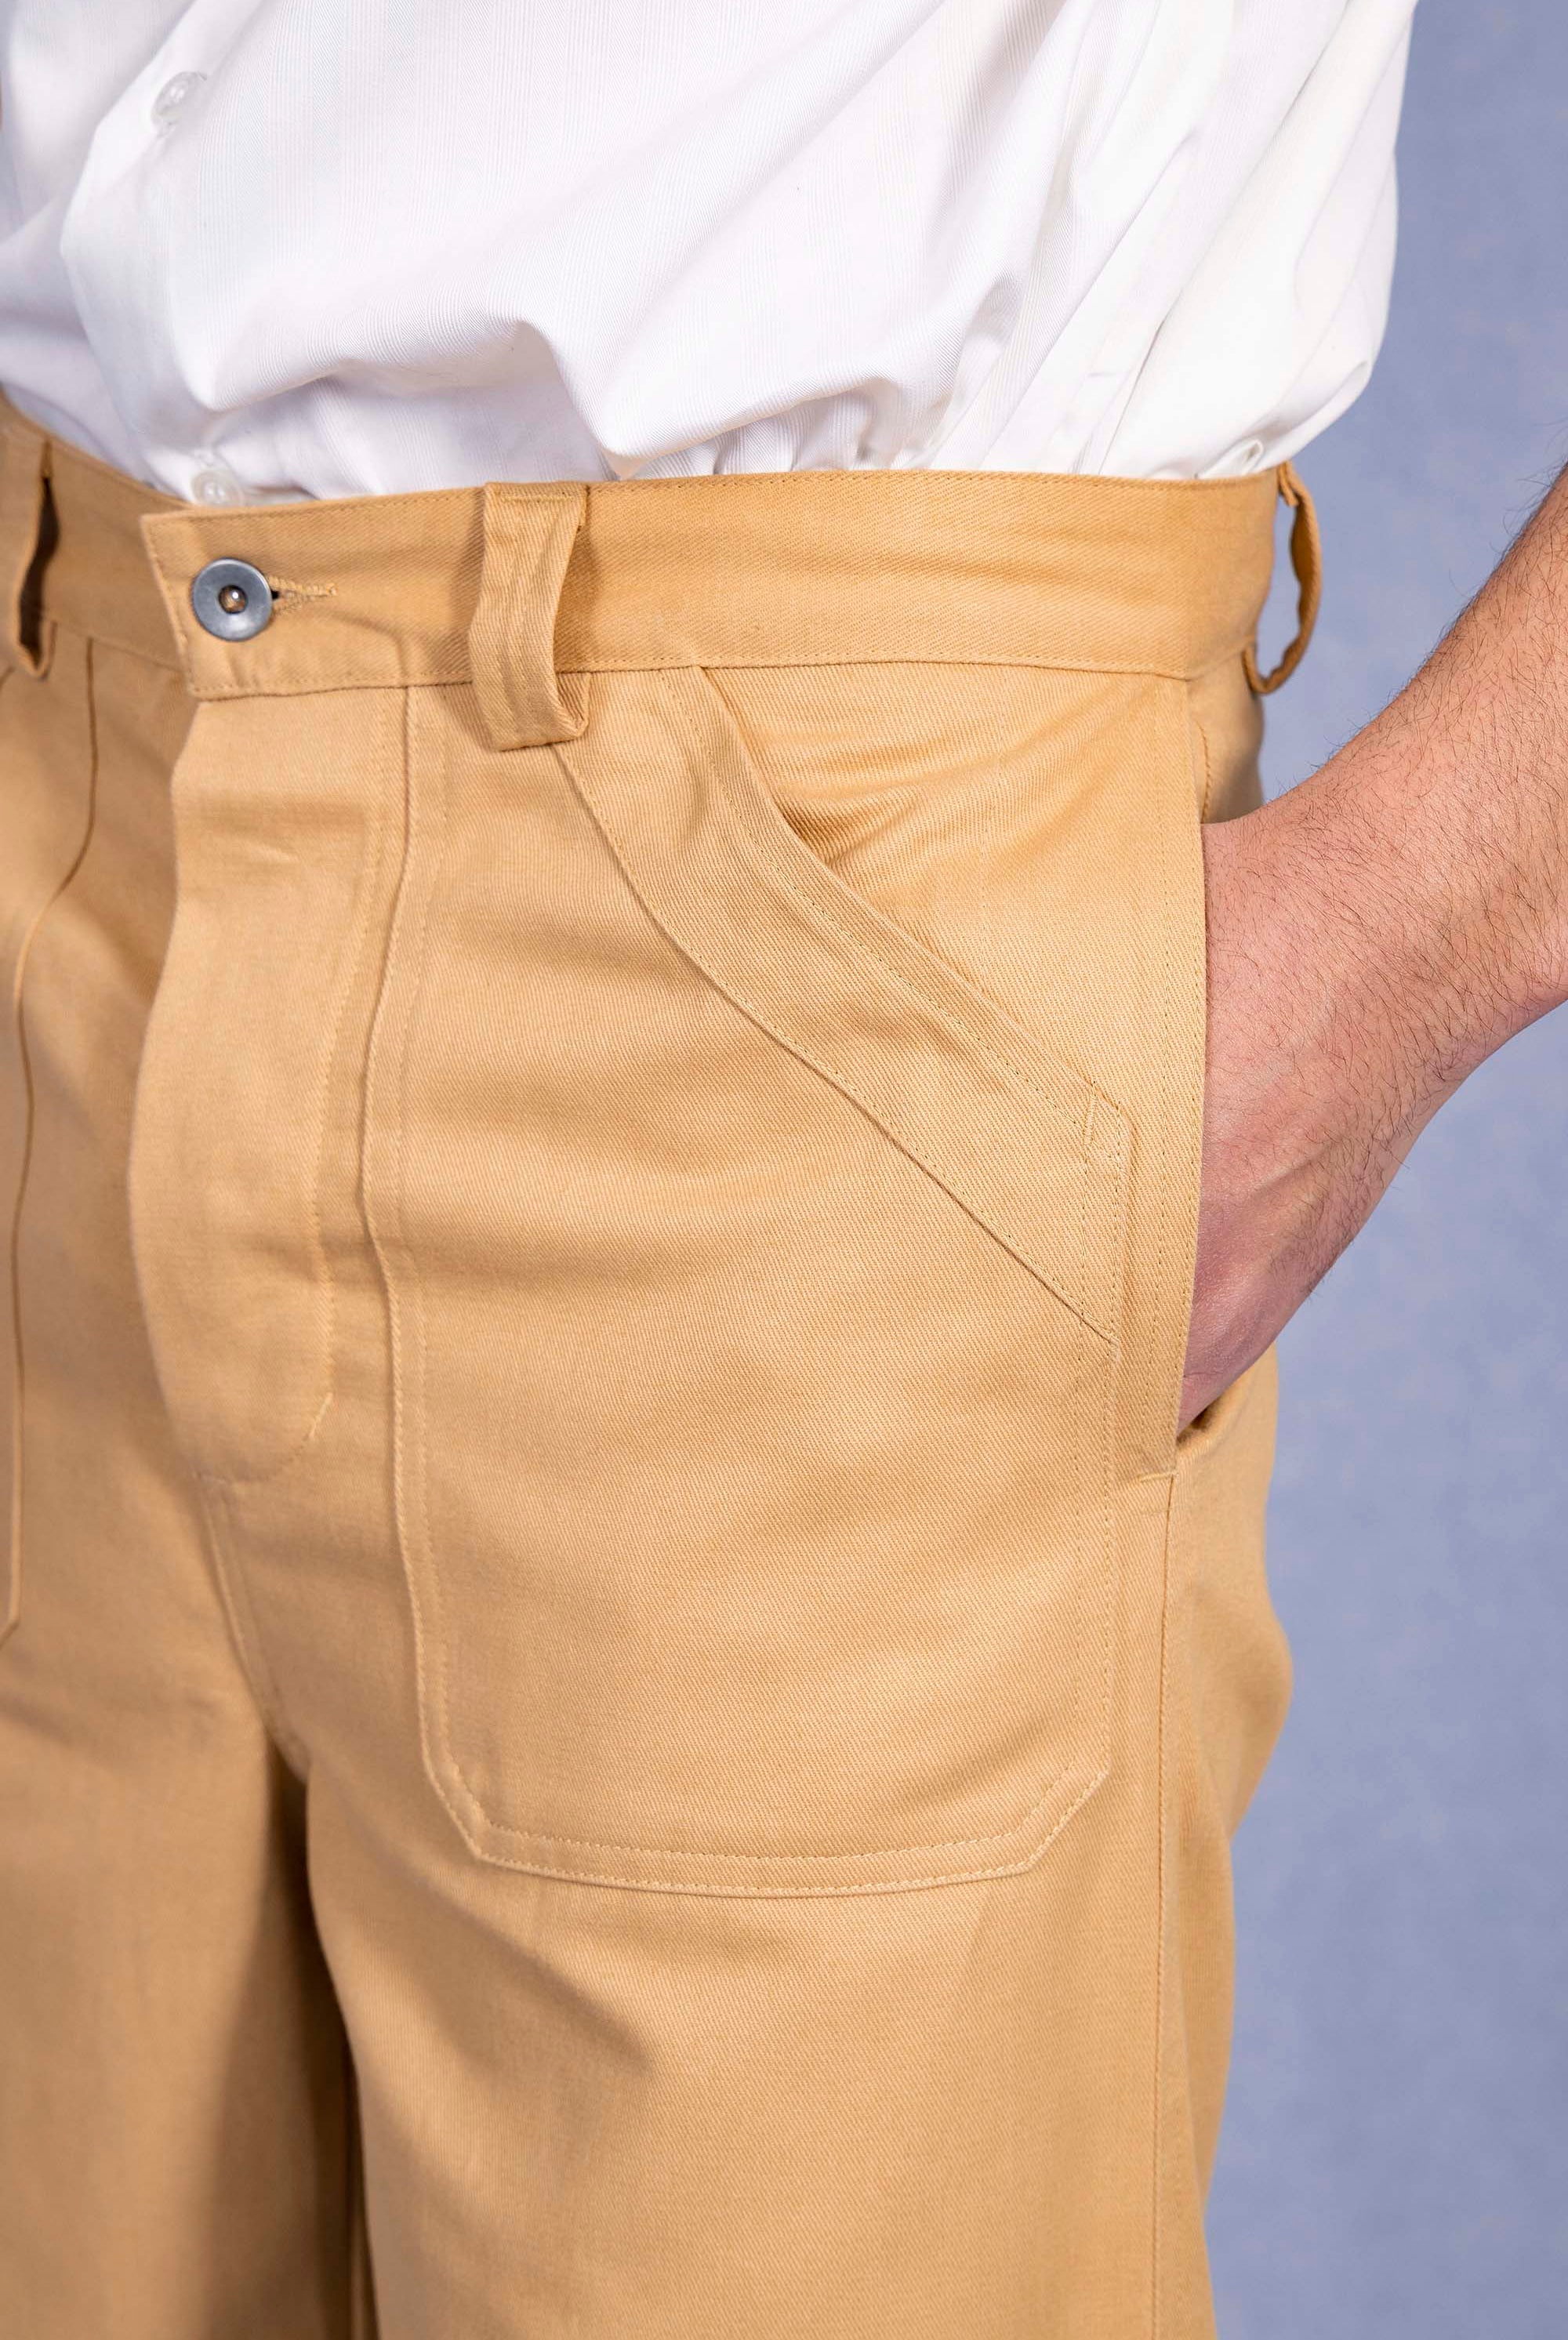 Pantalon Nestor Beige coupe aisée et facile à porter, indispensable à la garde-robe masculine